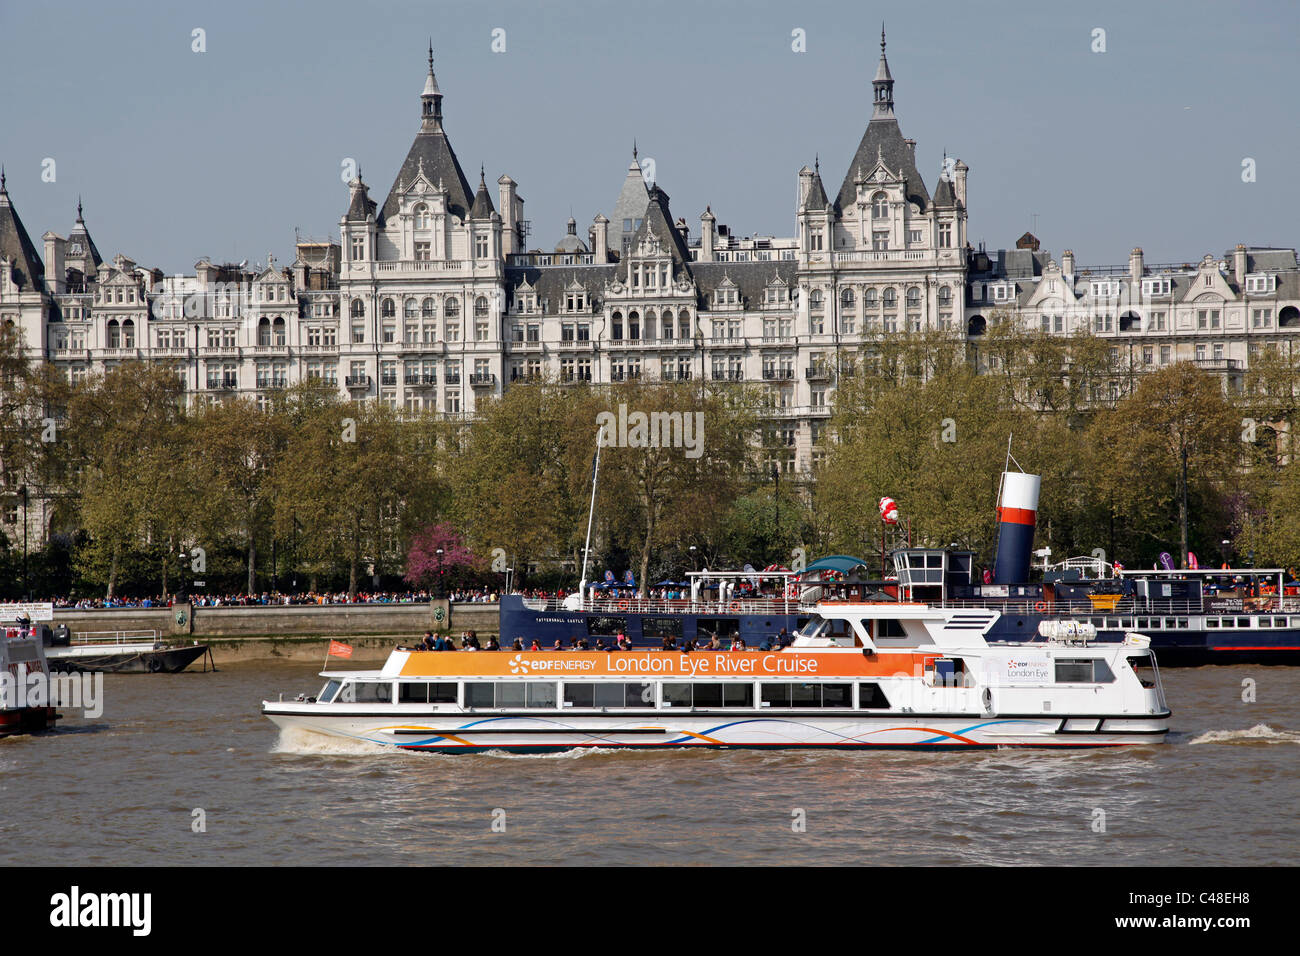 London Eye River Cruise touristischen Ausflugsboot auf der Themse in London, England Stockfoto